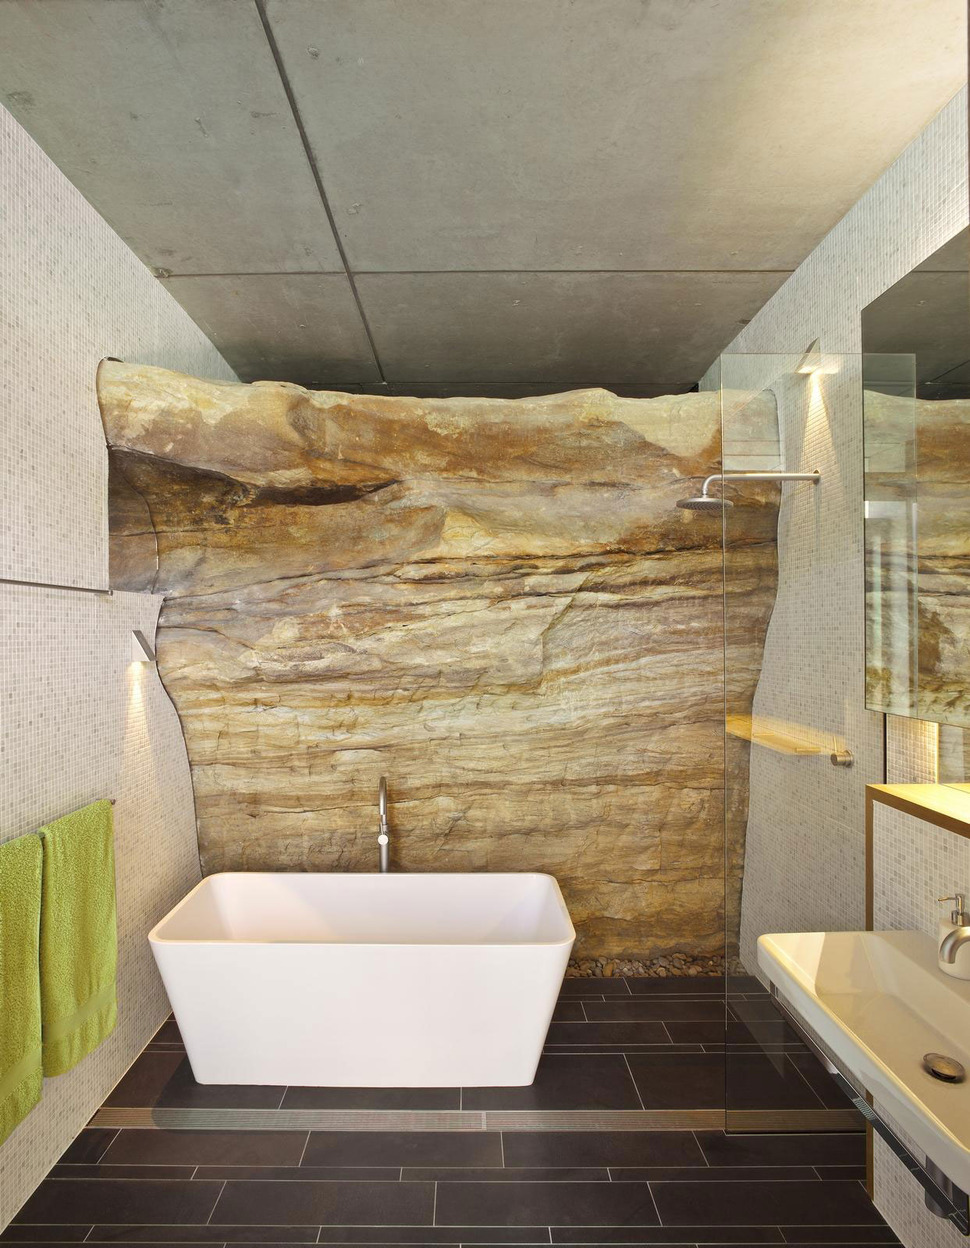 ceiling-wave-upstairs-boulder-wall-downstairs-14-bathroom.jpg